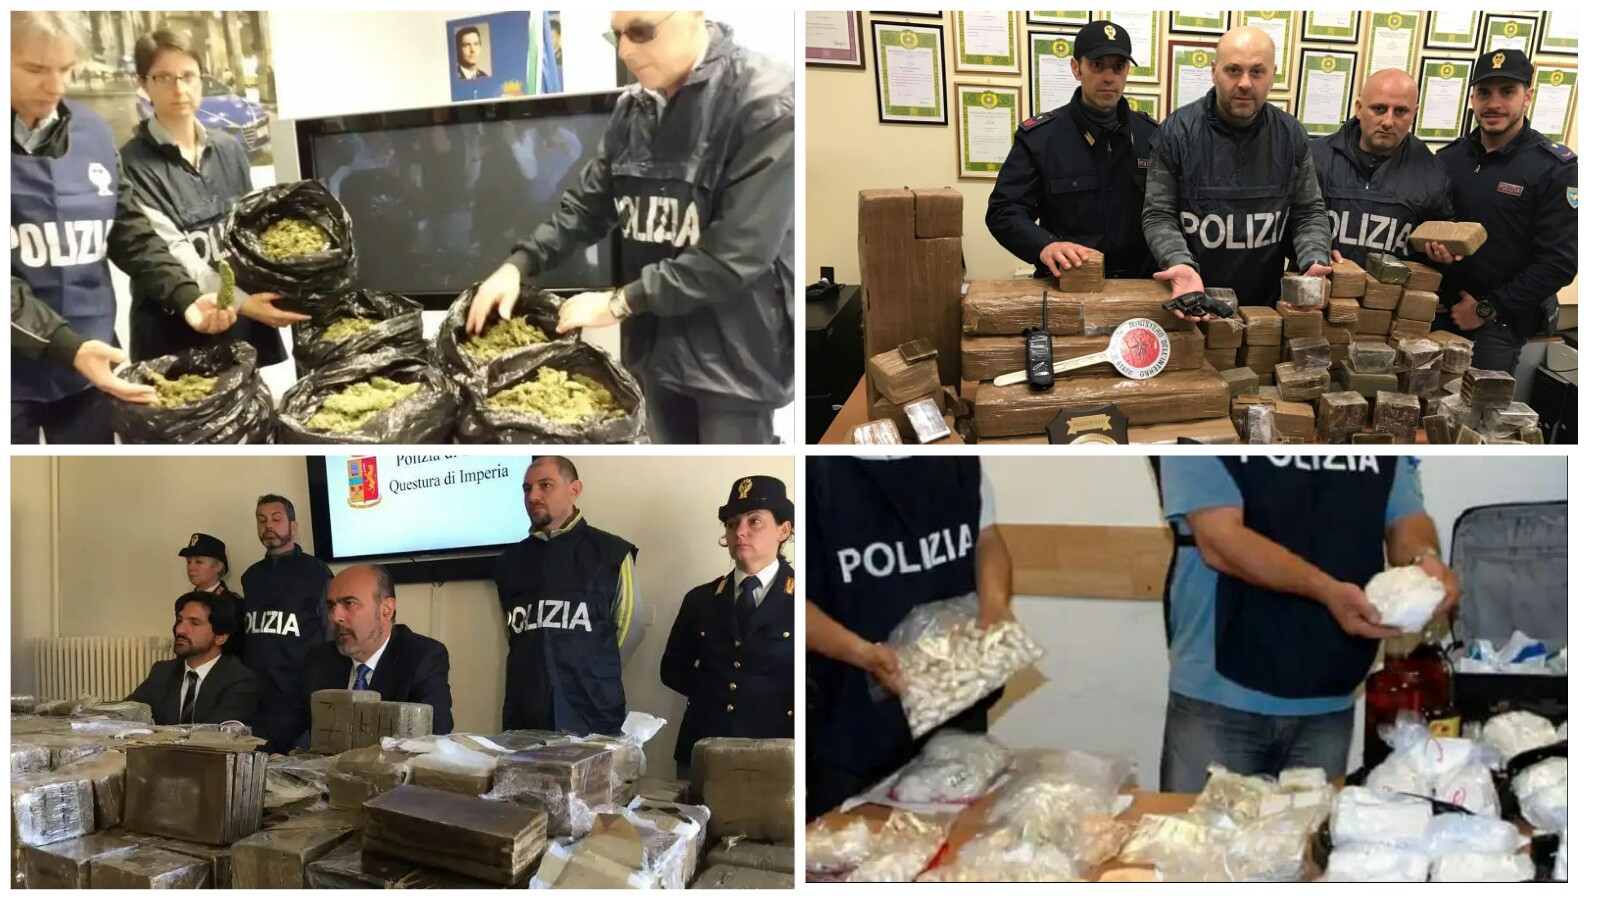 الشرطة الإيطالية تقوم بتفكيك شبكة تحت اشراف الشرطة الدولية و تتمكن من حجز كميات هائلة من المخدرات